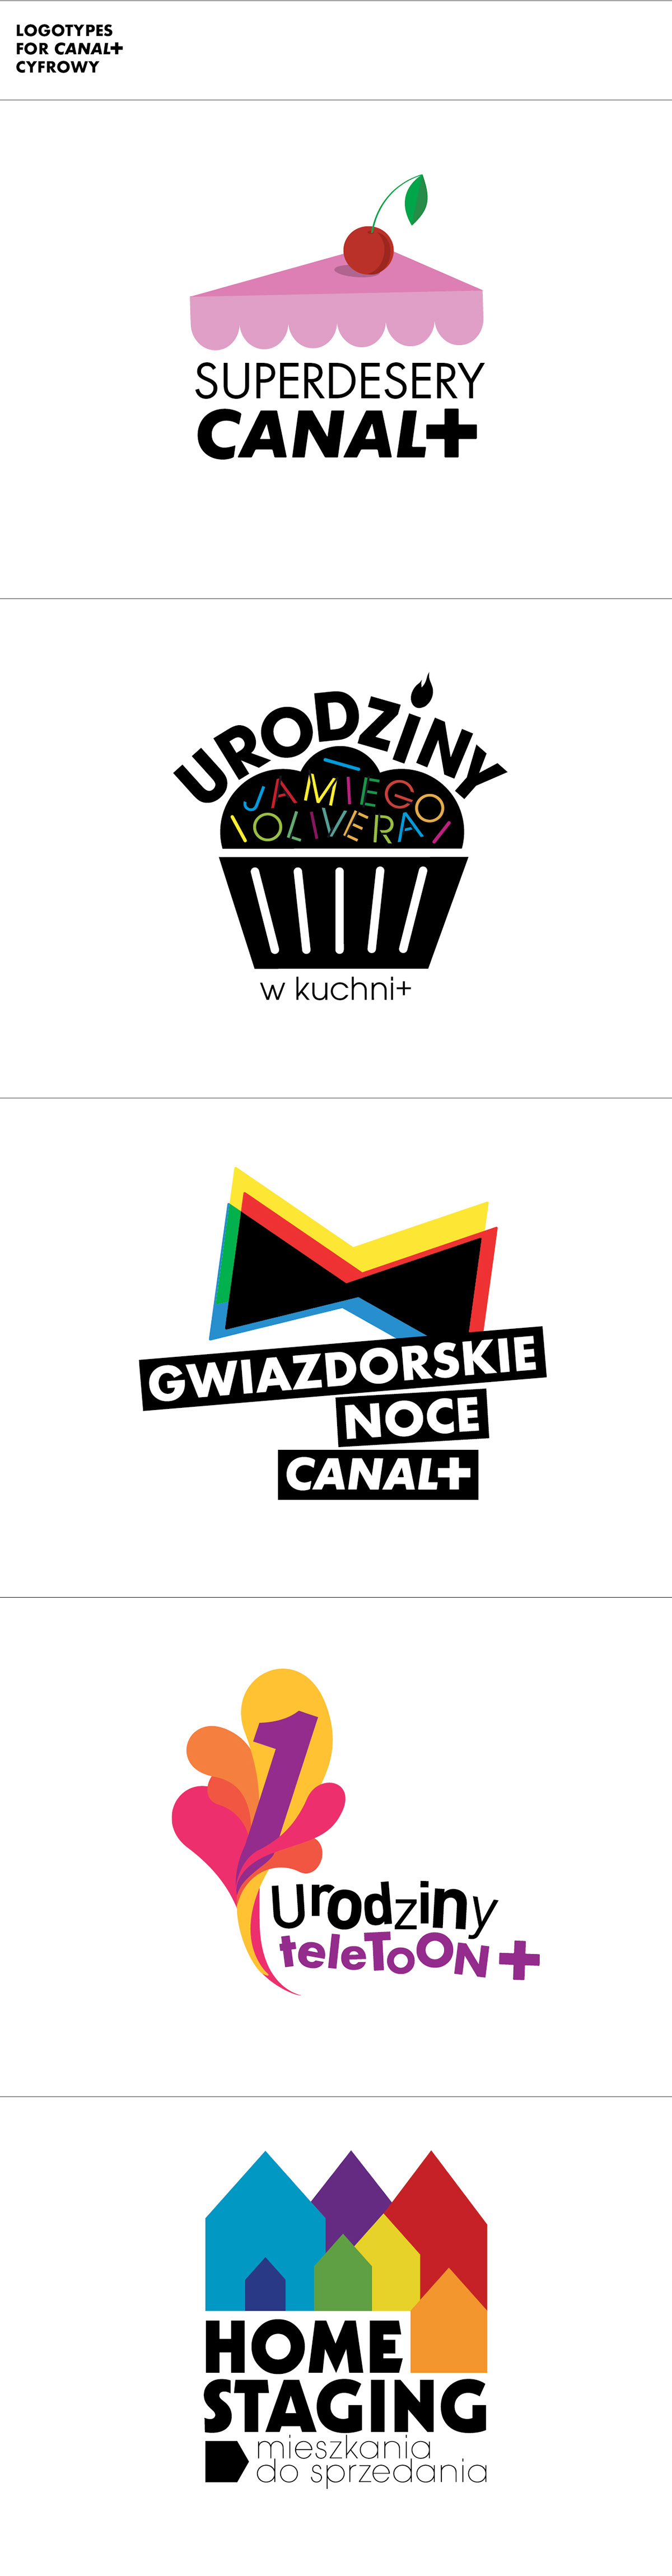 logo home staging gwiazdorskie noce superdesery canal+ urodziny teletoon